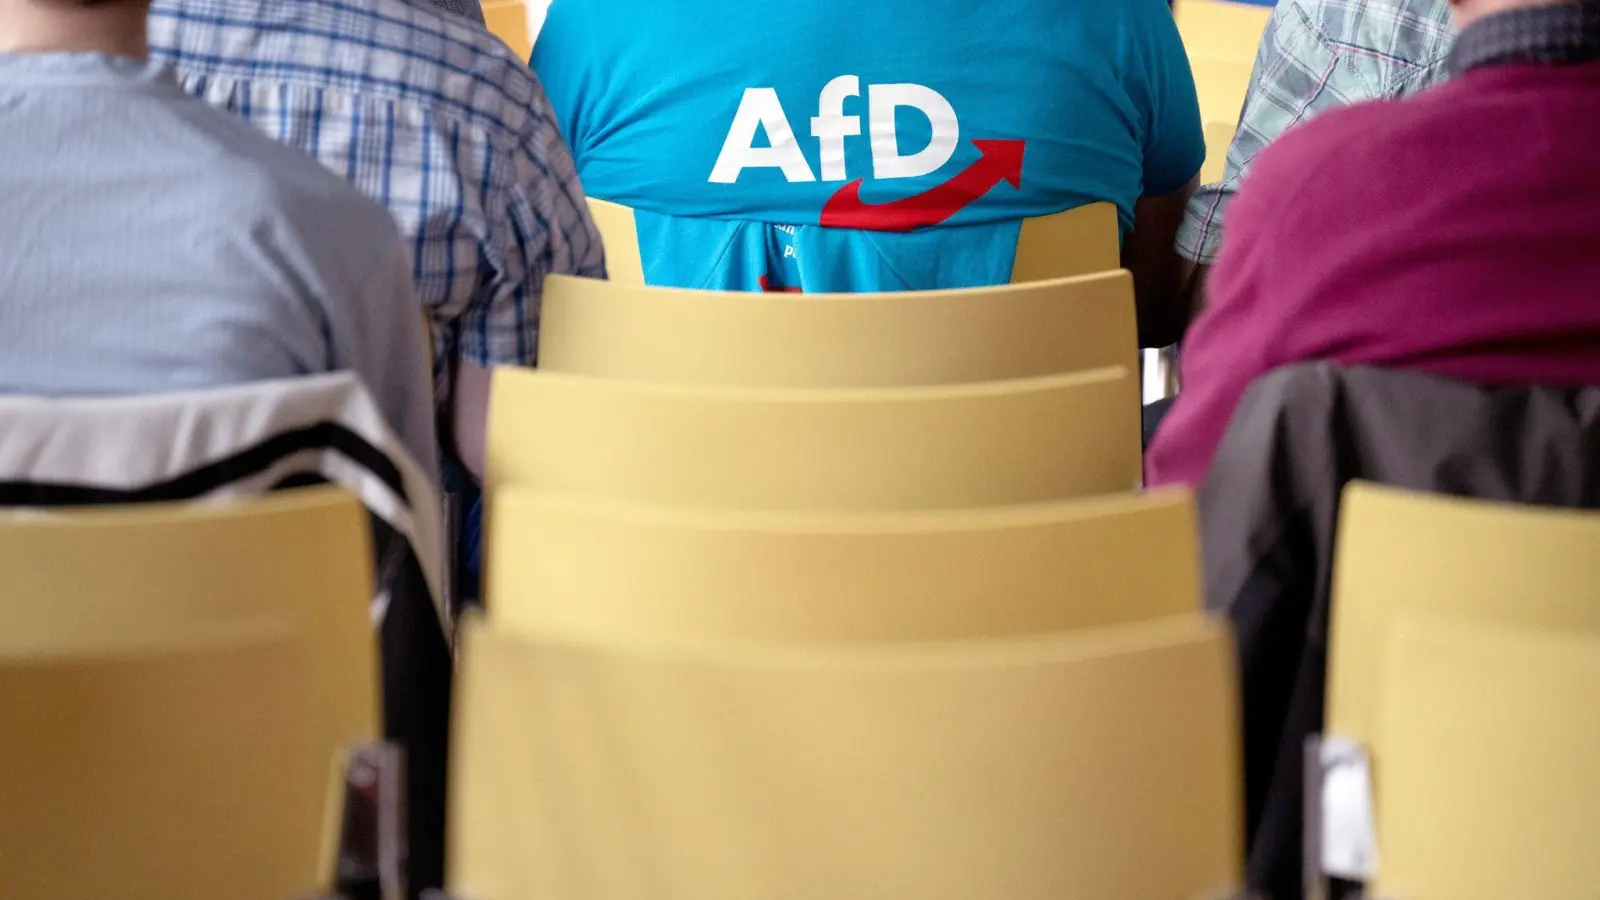 Vor dem Hintergrund relativ hoher Umfragewerte für die AfD hat sich CDU-Chef Merz noch einmal klar gegen eine Zusammenarbeit mit der Partei ausgesprochen. (Foto: Sebastian Christoph Gollnow/dpa)